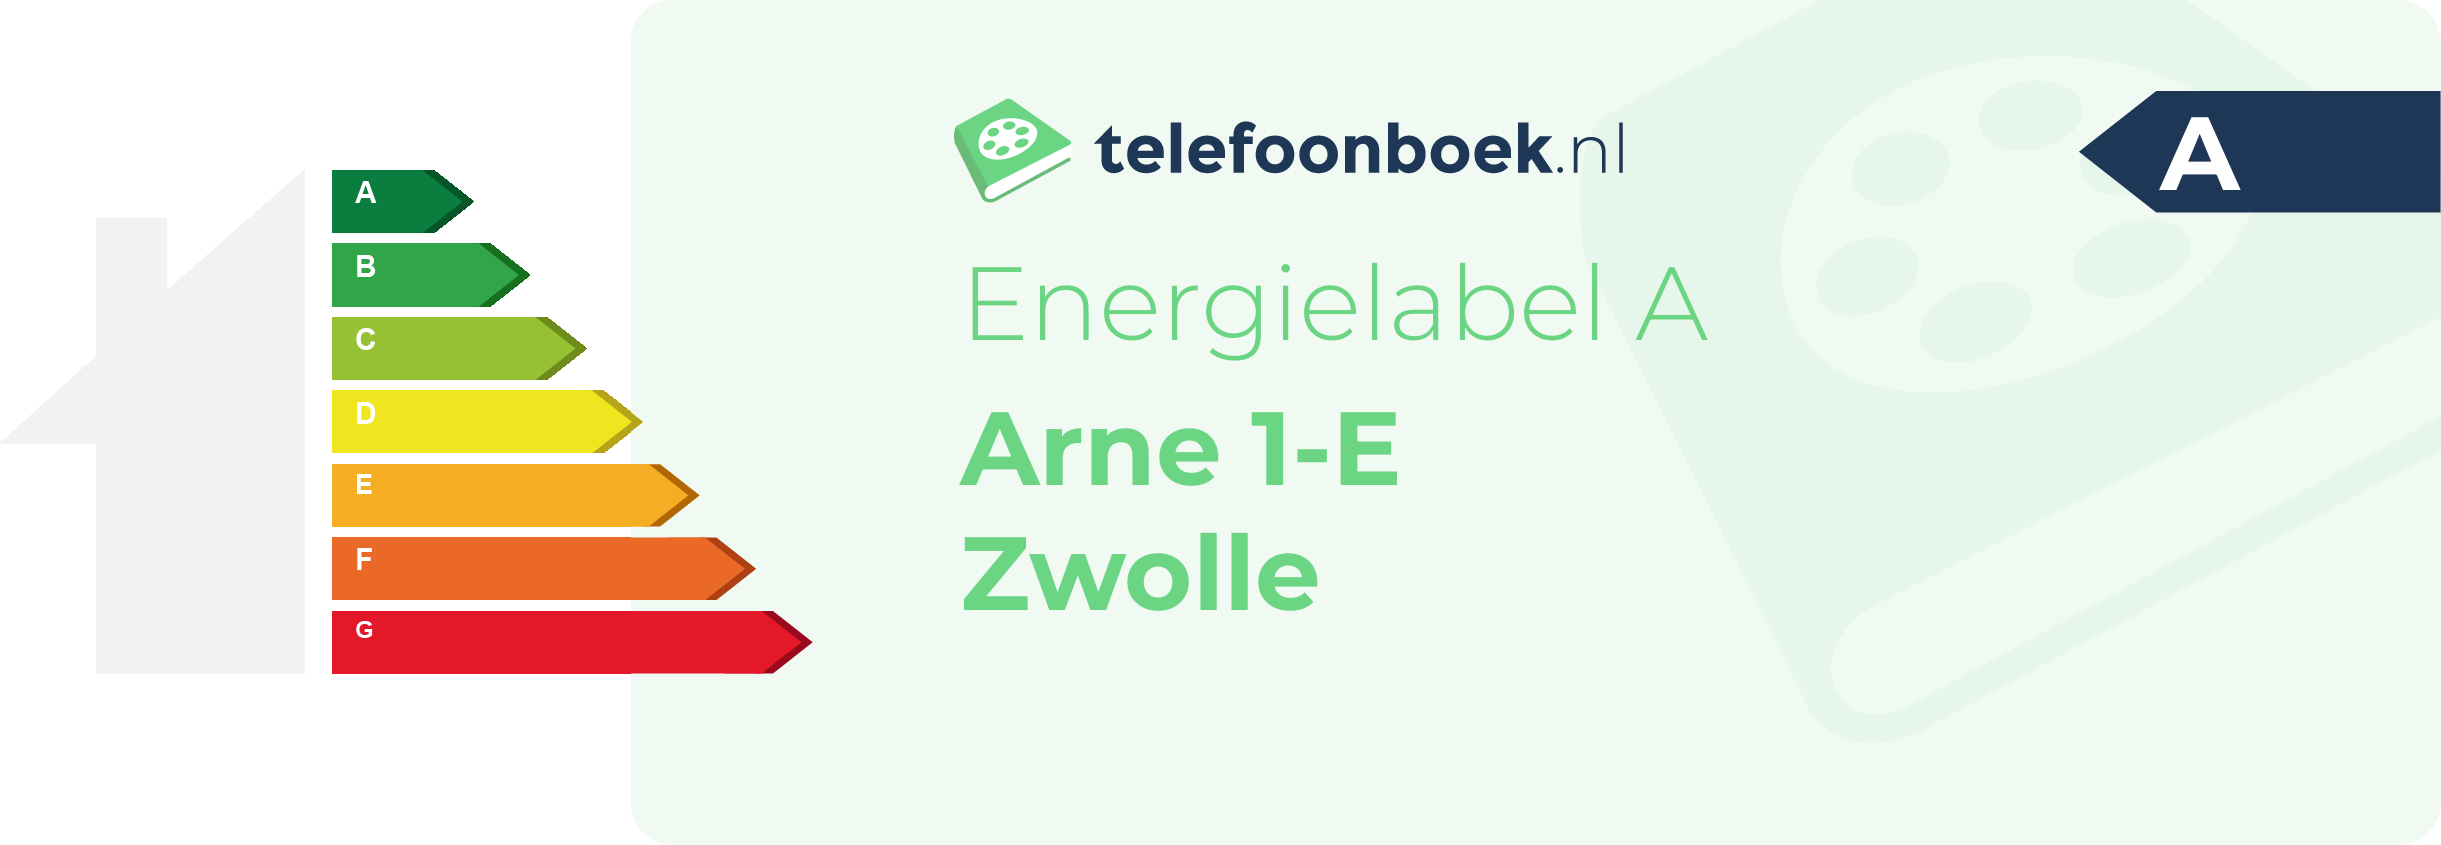 Energielabel Arne 1-E Zwolle